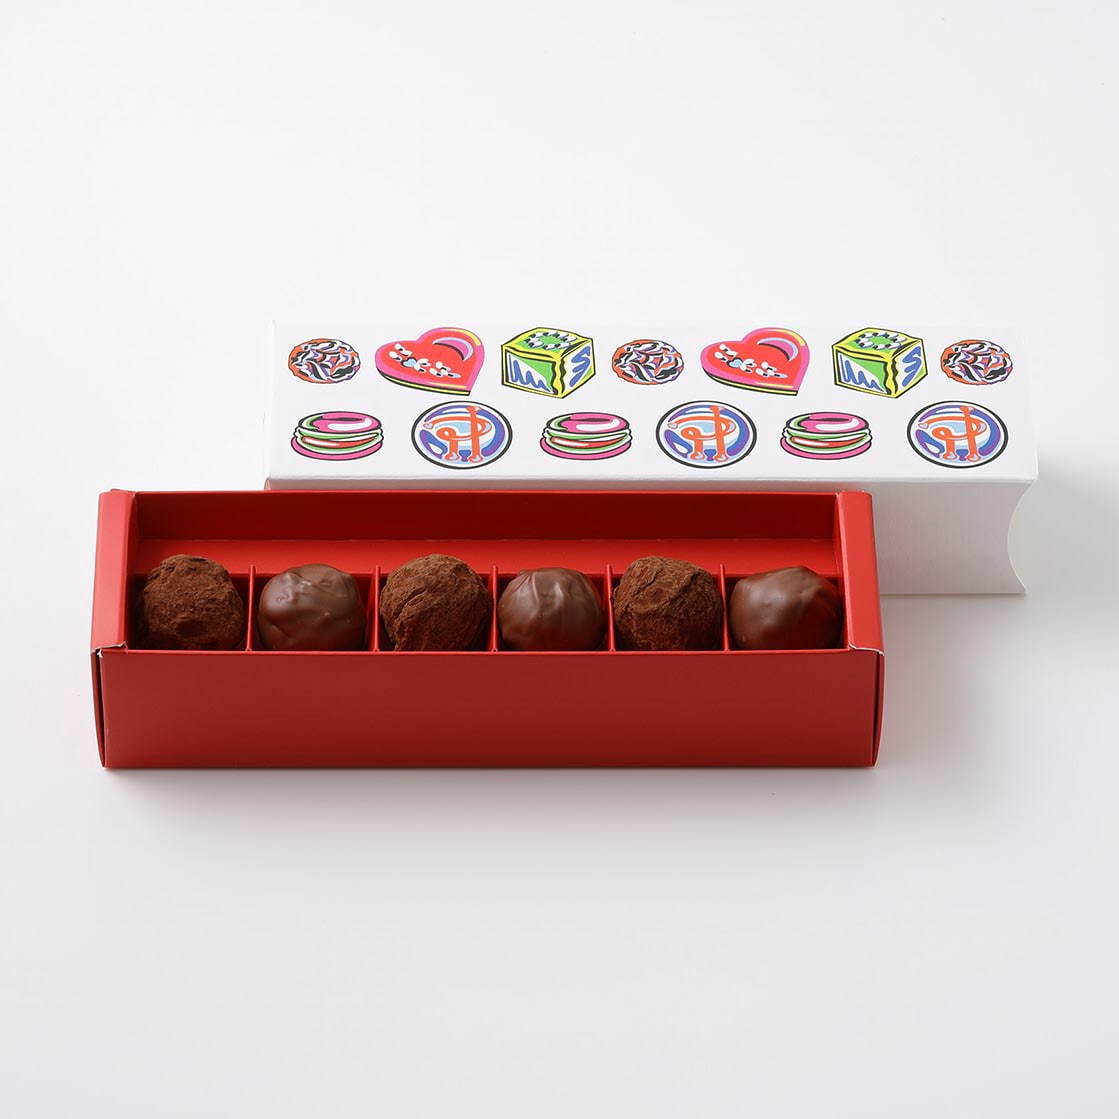 ピエール・エルメ・パリのバレンタイン"杉の実"チョコレートやショコラマカロン、ハート型ケーキも｜写真24